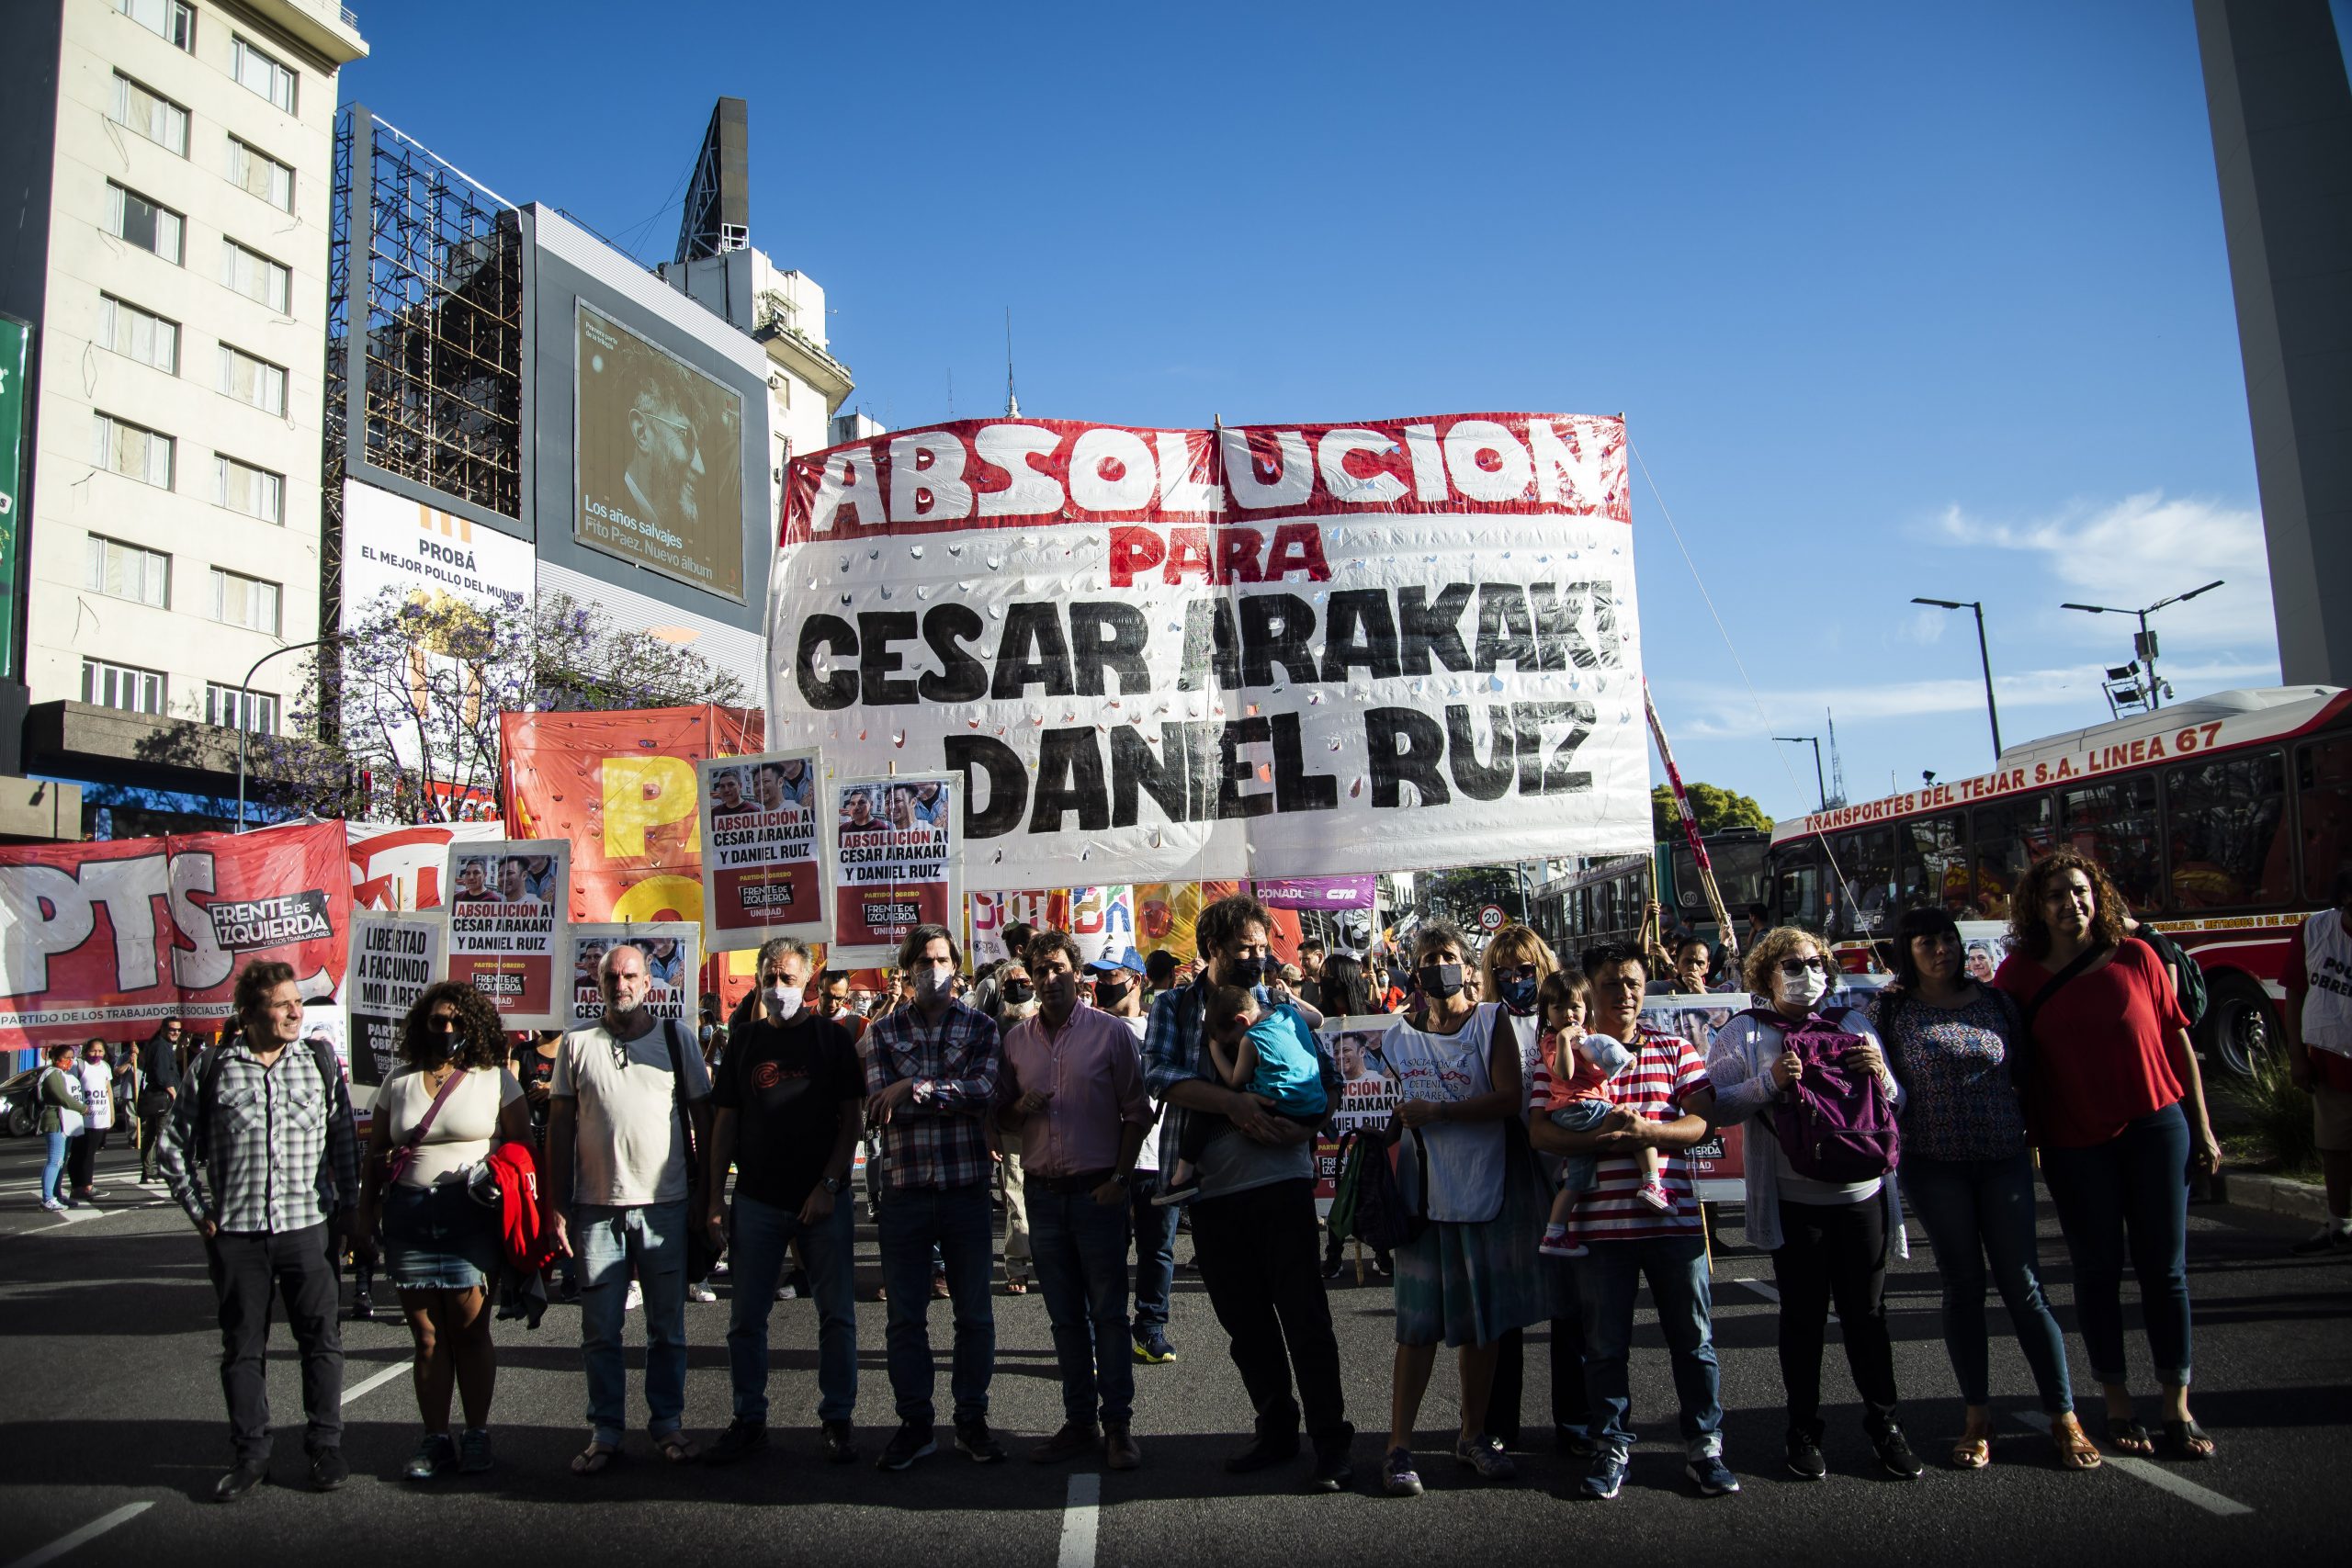 Presentamos la apelación contra la sentencia del Juez Ríos condenando a Cesar Arakaki y Daniel Ruiz